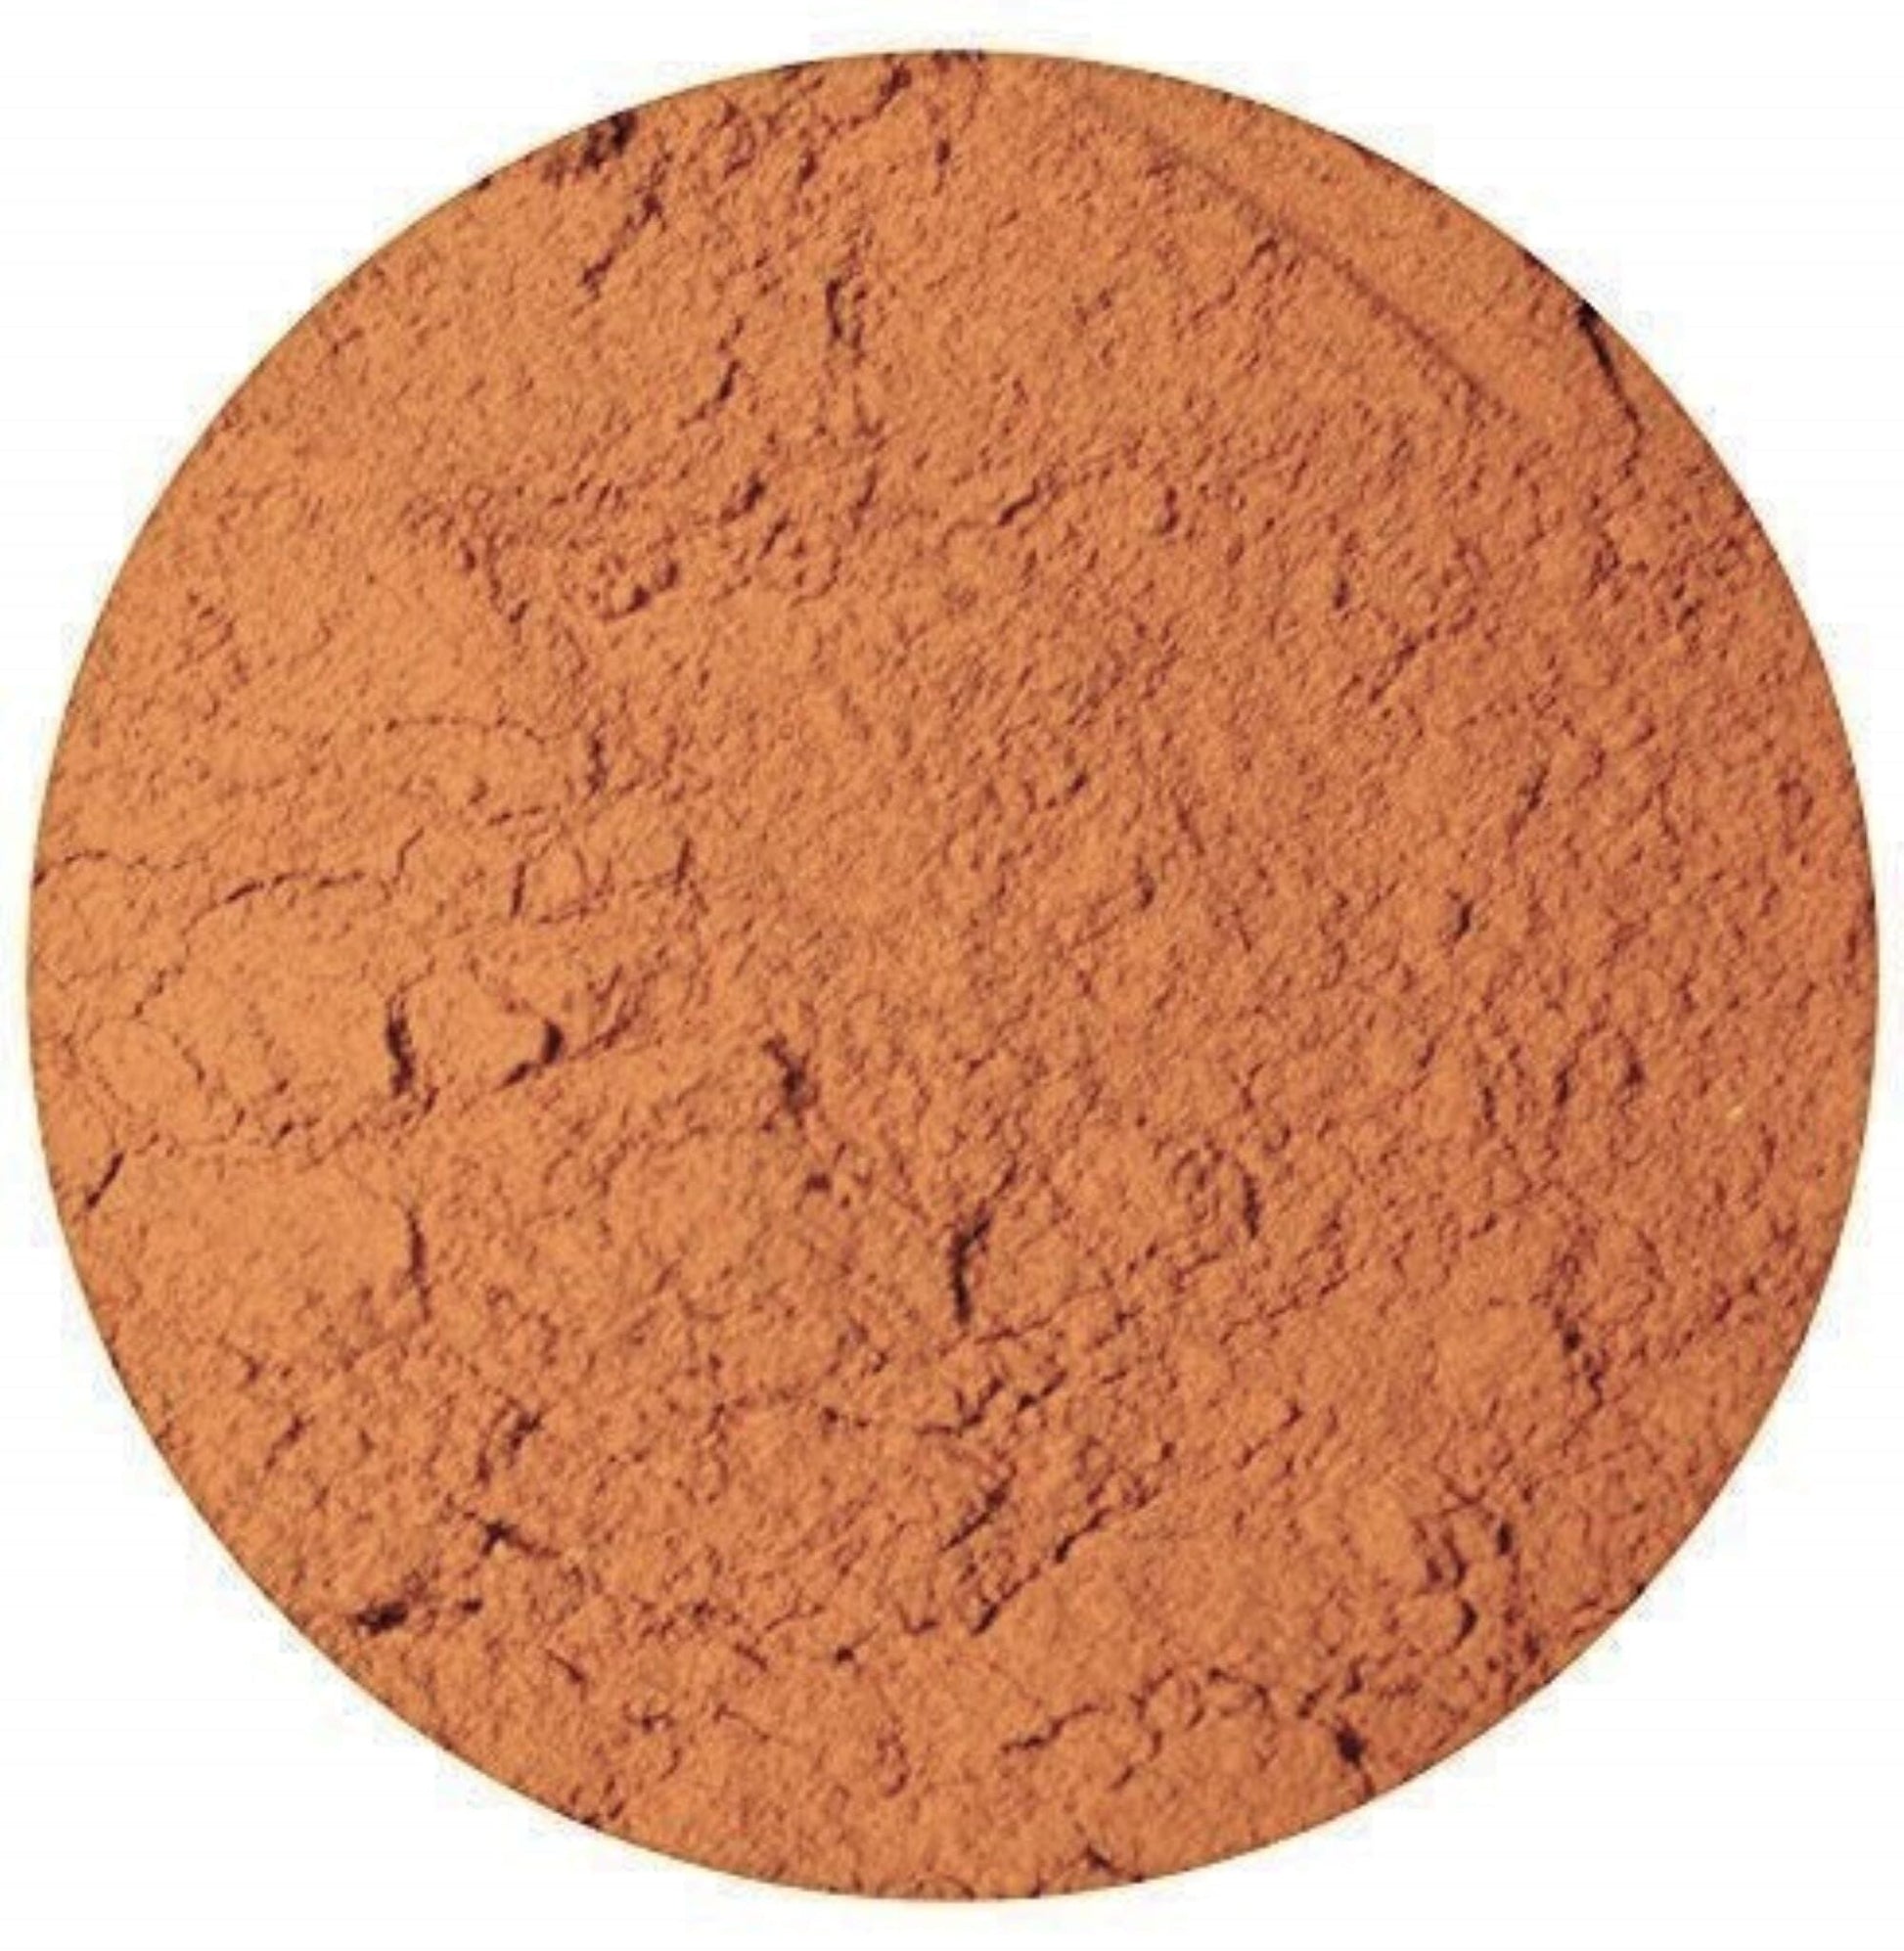 Cinnamon Ground 2 oz Tin Can - Unique Flavors Spices Unique Flavors LLC 